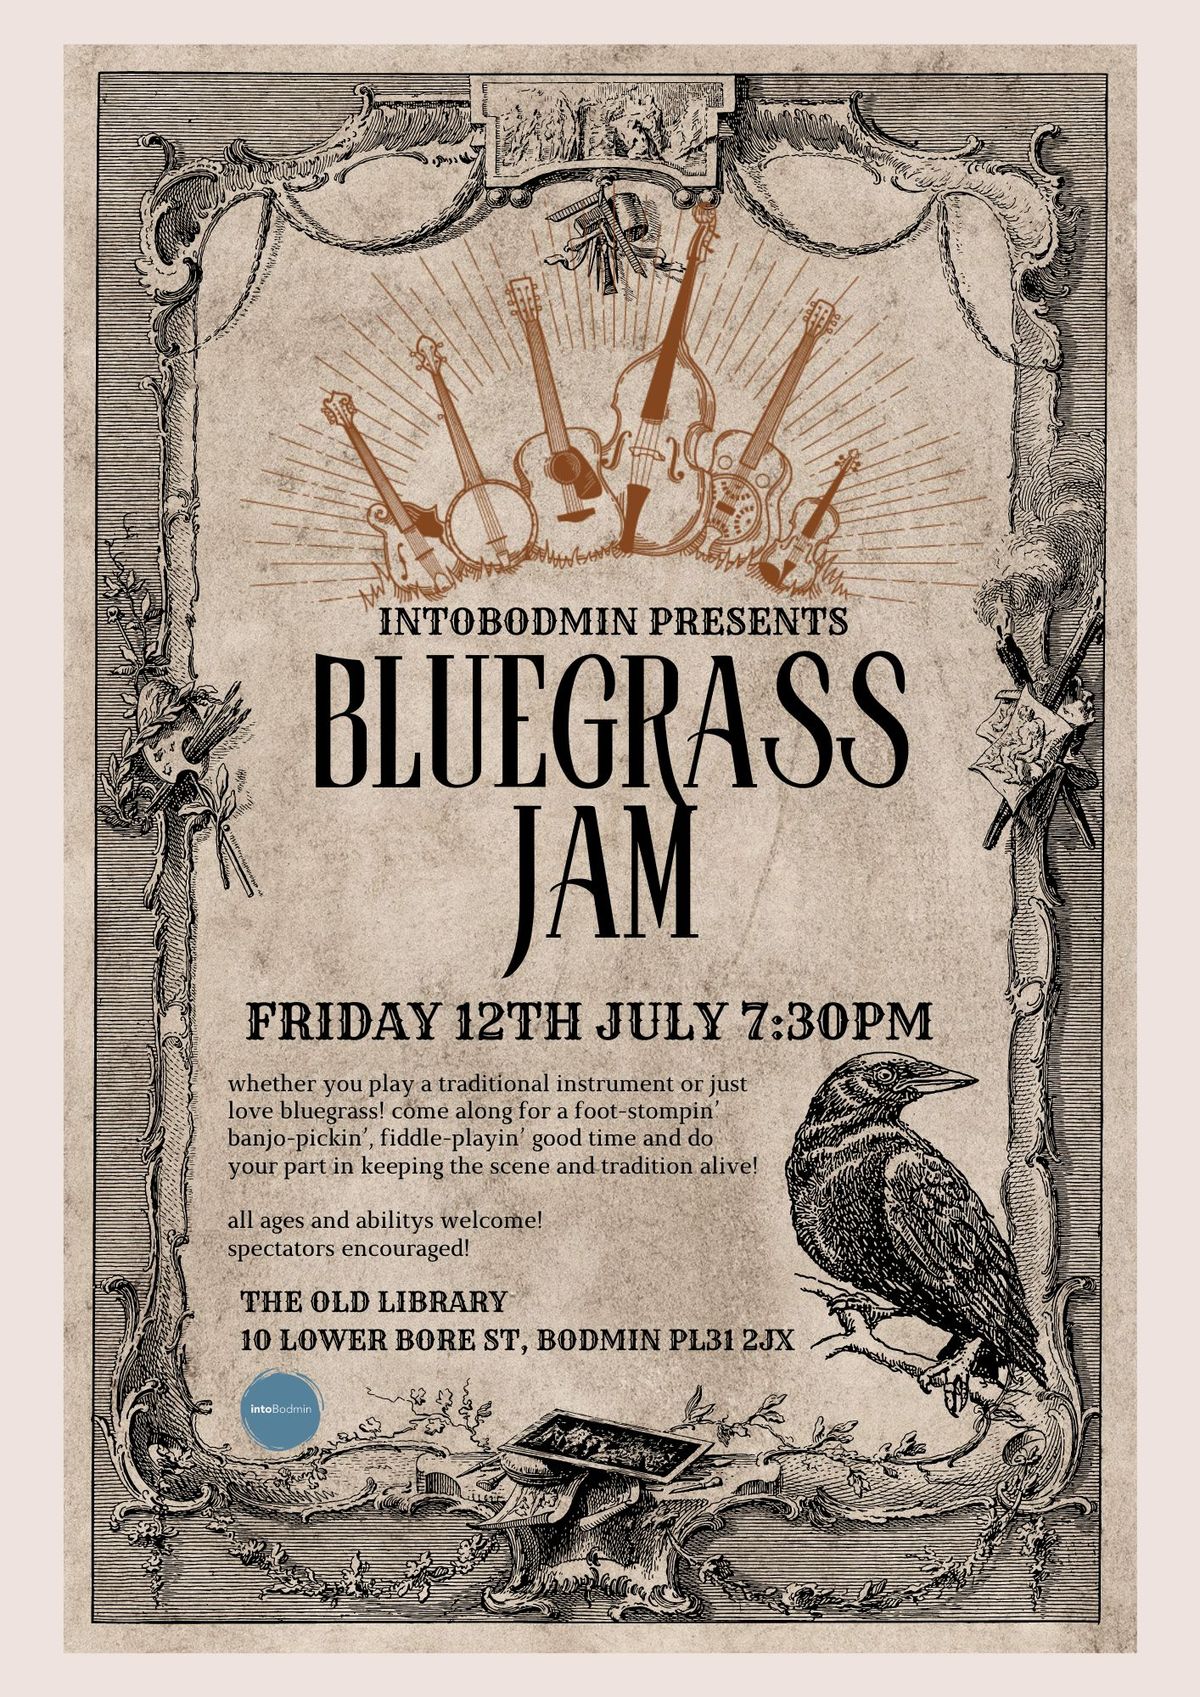 Bluegrass Jam